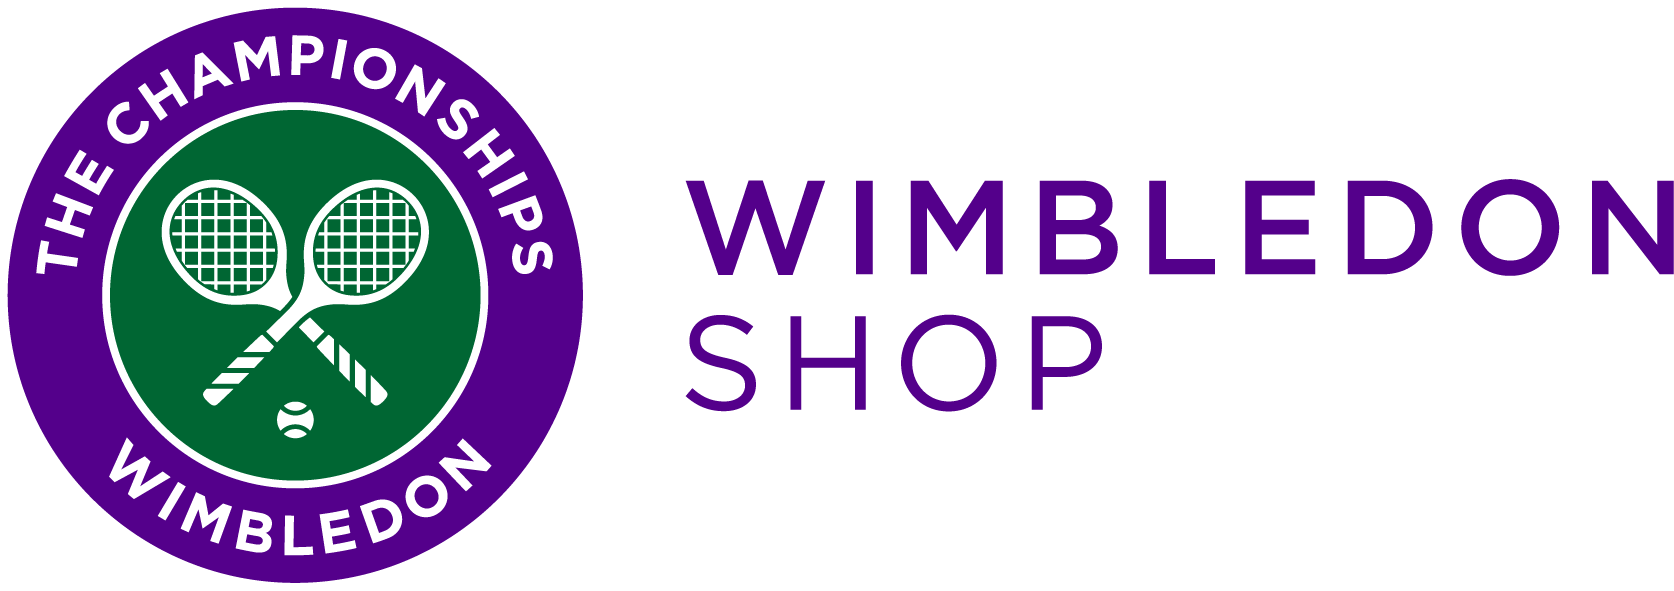 The Wimbledon Online Shop ︳ The Wimbledon Online Shop